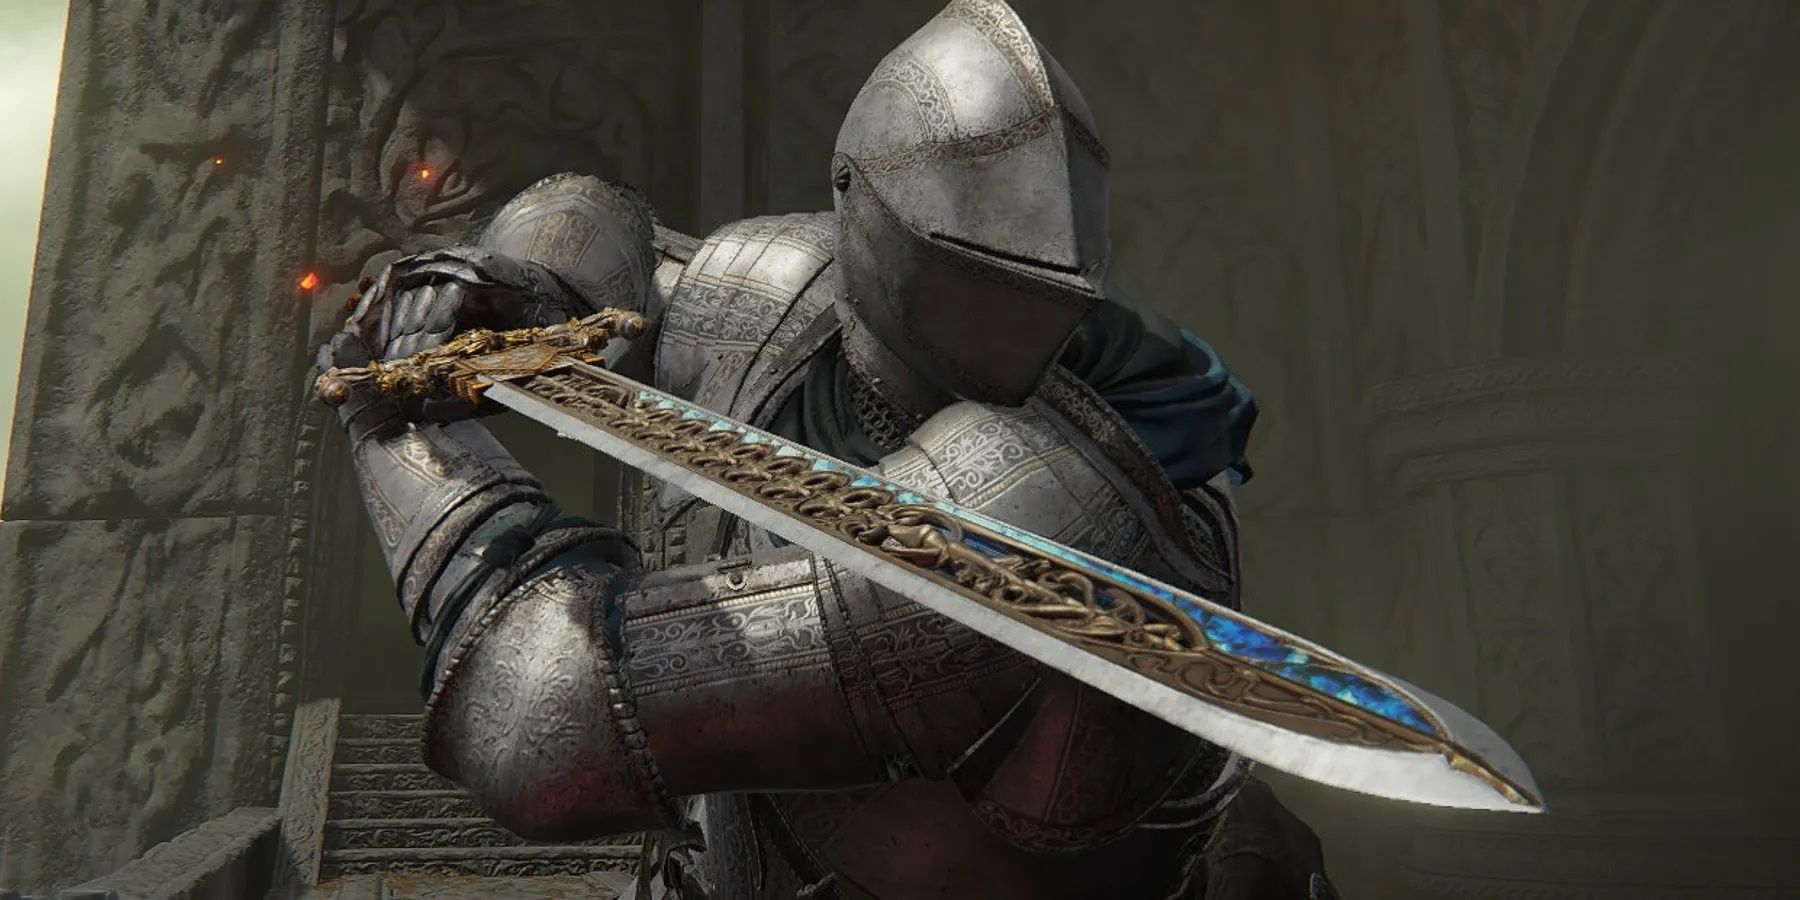 Elden Ring Sword For Sale - Video Game Cosplay Props ReplicaSwords.us